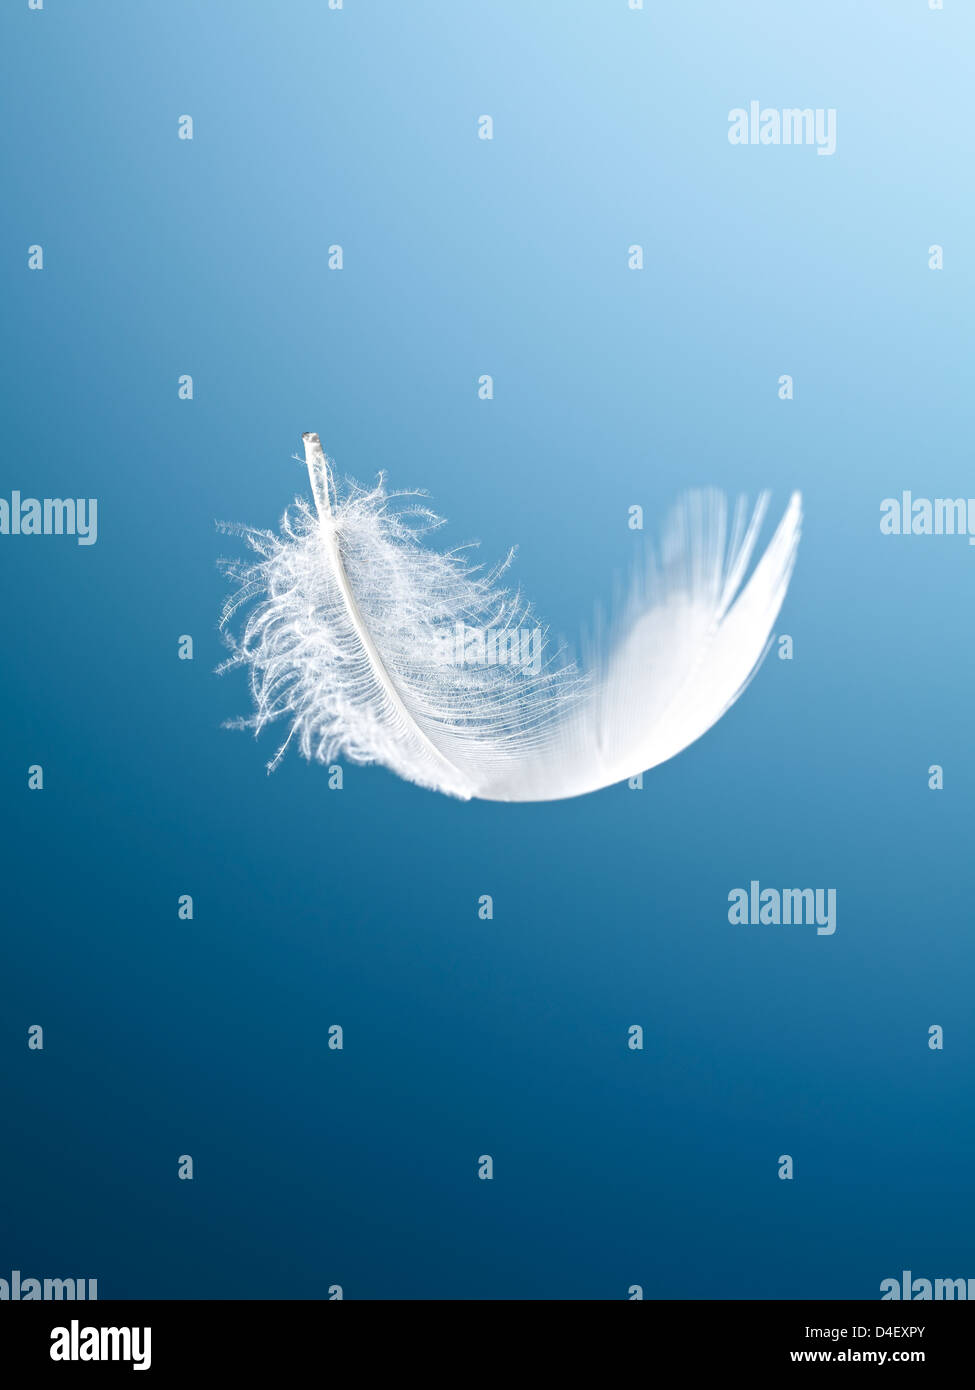 Feather flottant sur fond bleu Banque D'Images